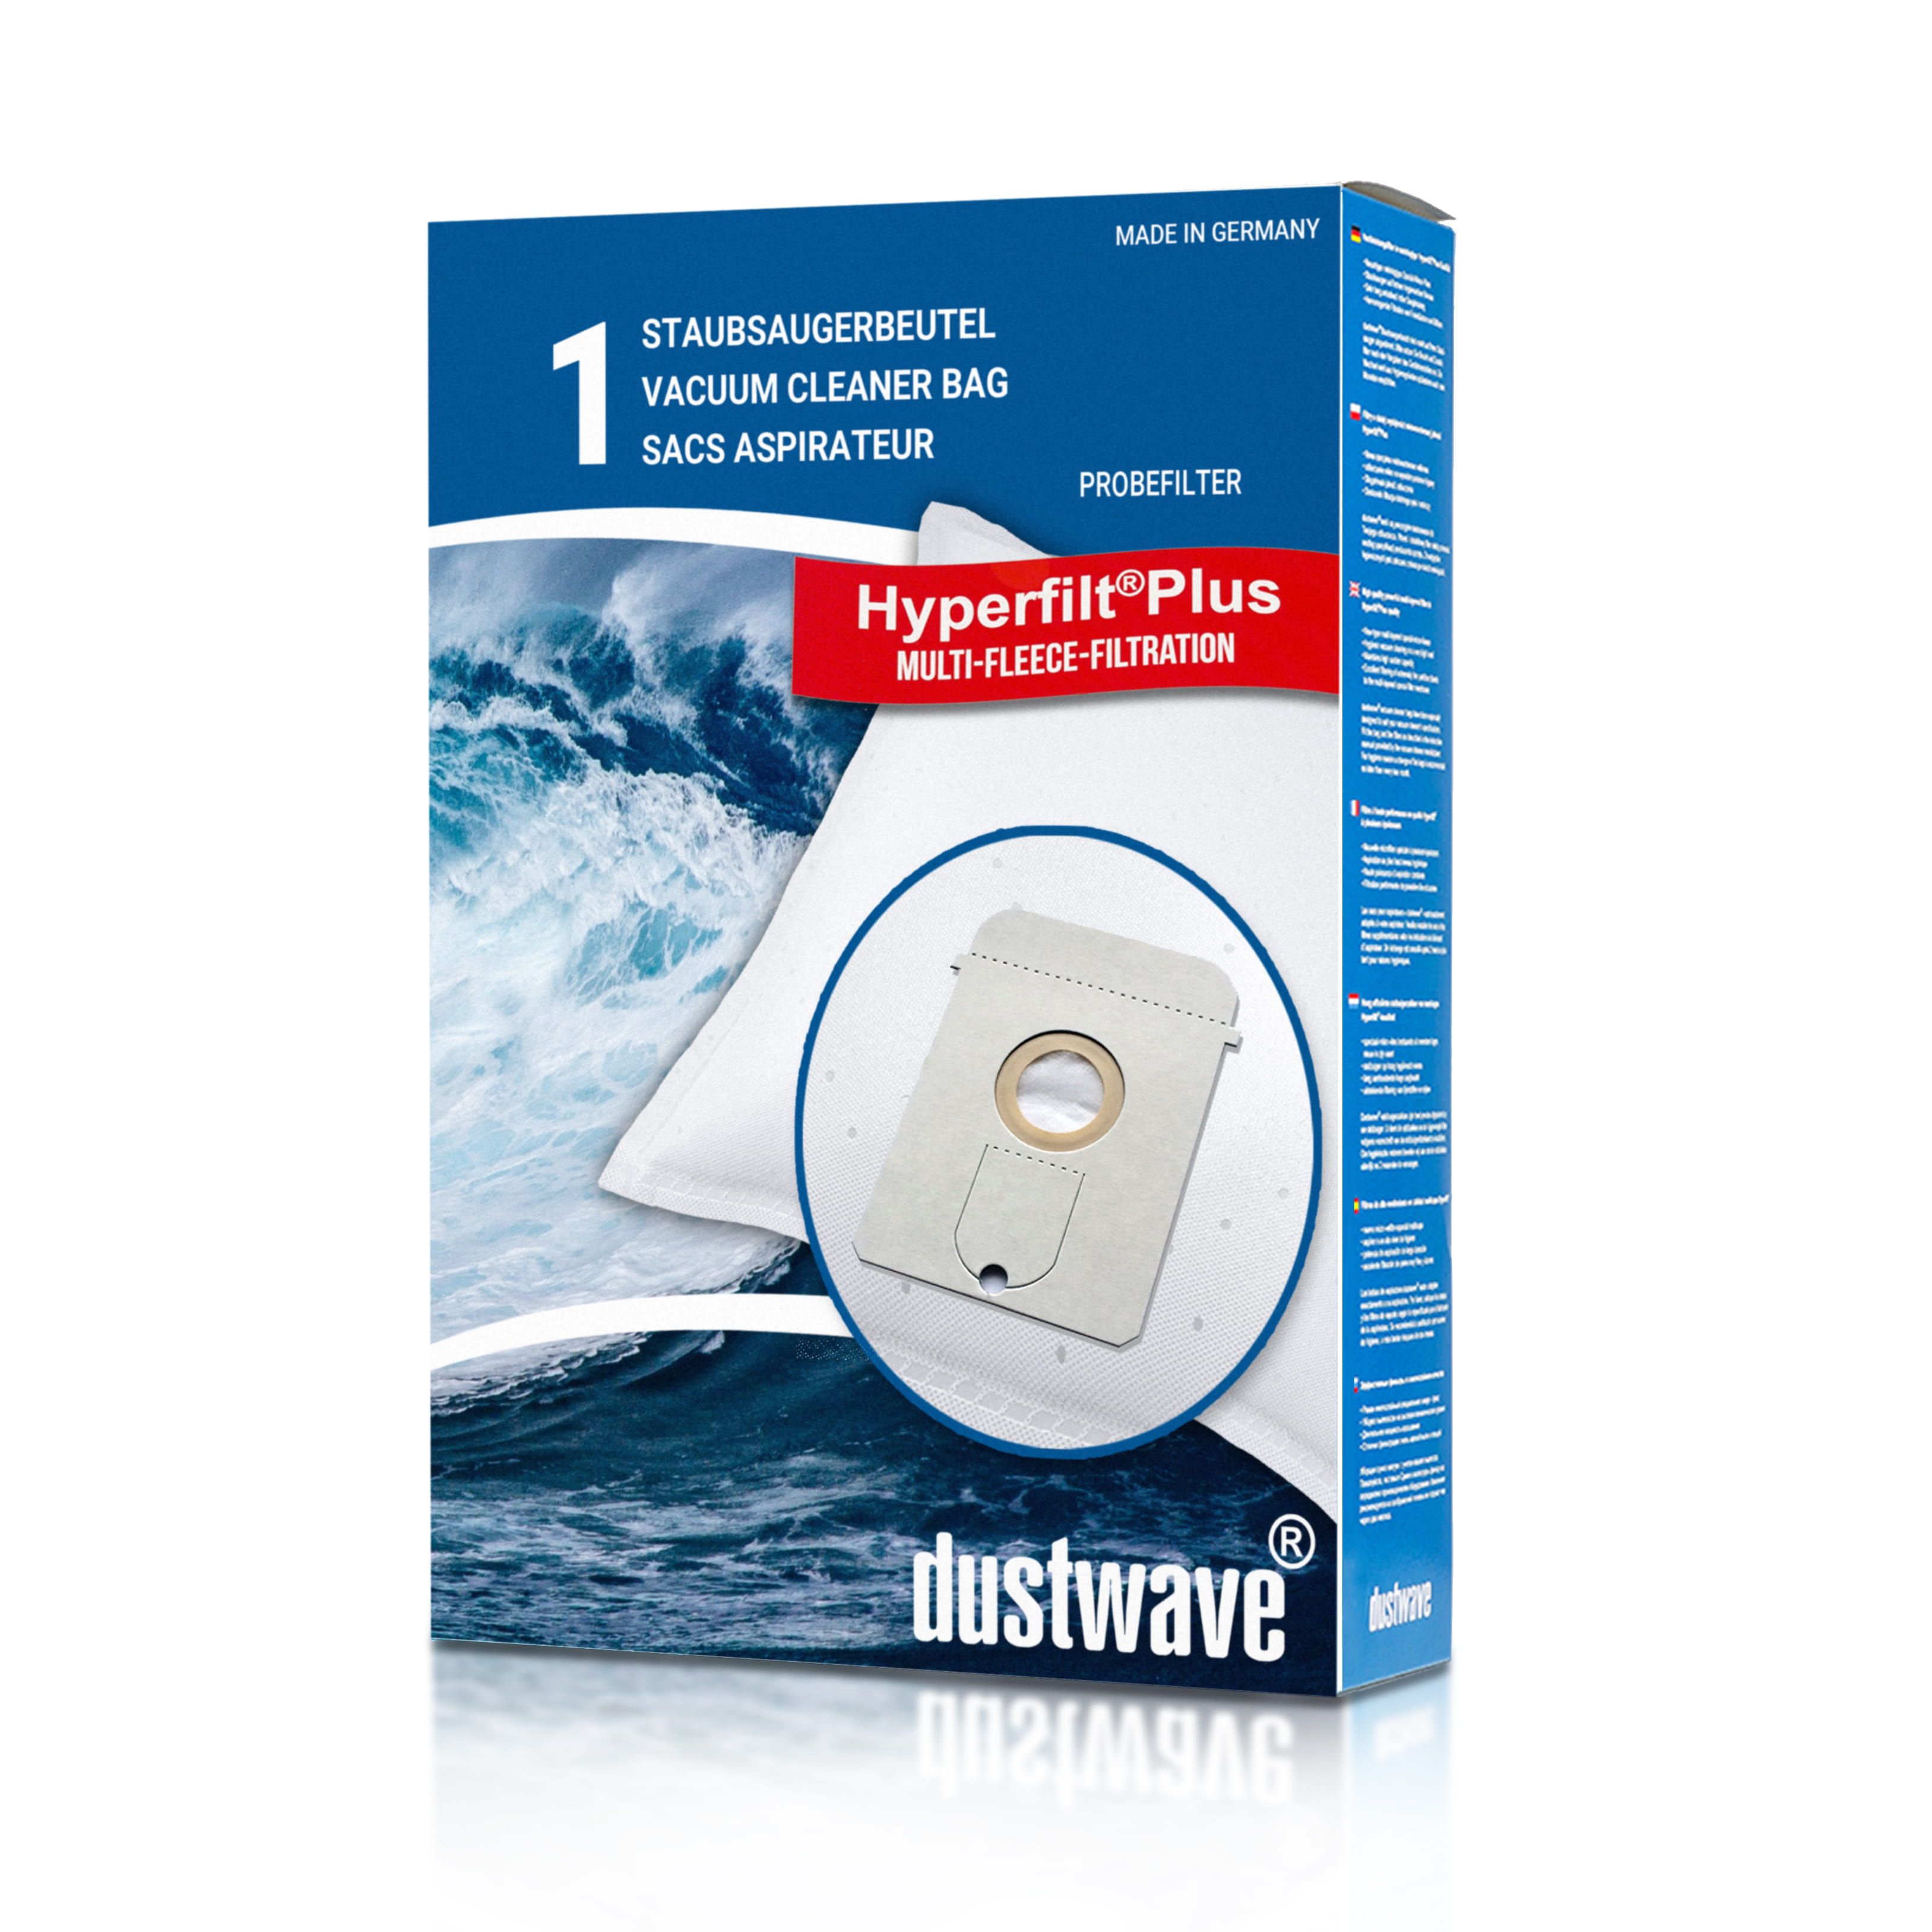 Dustwave® 1 Staubsaugerbeutel für Base BA 1001 - hocheffizient mit Hygieneverschluss - Made in Germany